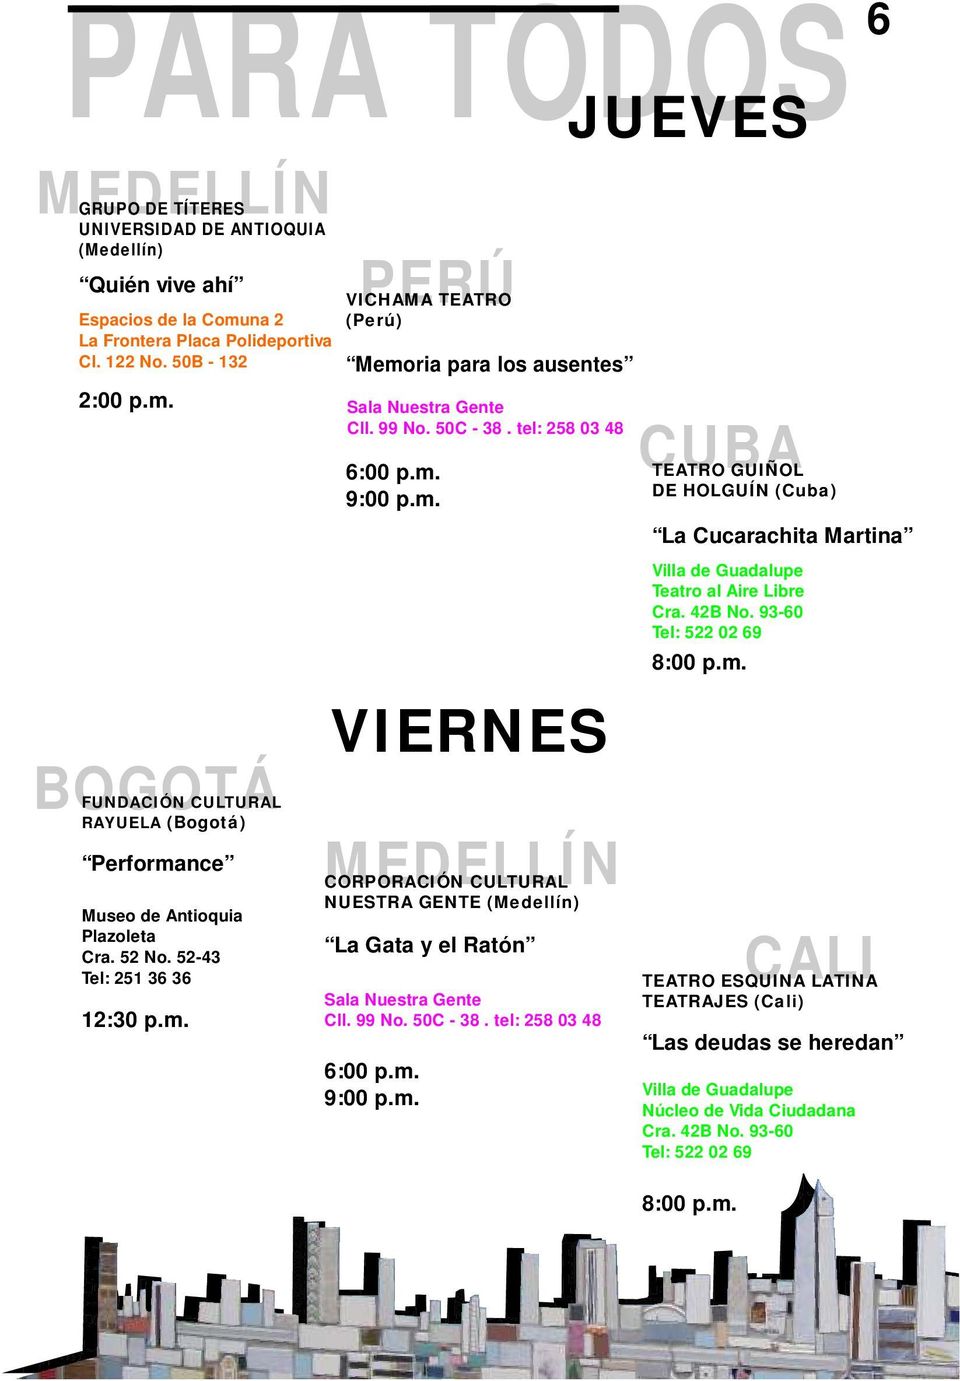 m. 9:00 p.m. VIERNES CORPORACIÓN CULTURAL NUESTRA GENTE (Medellín) La Gata y el Ratón 6:00 p.m. 9:00 p.m. JUEVES TEATRO GUIÑOL DE HOLGUÍN (Cuba) CALI 6 La Cucarachita Martina Villa de Guadalupe Teatro al Aire Libre Cra.